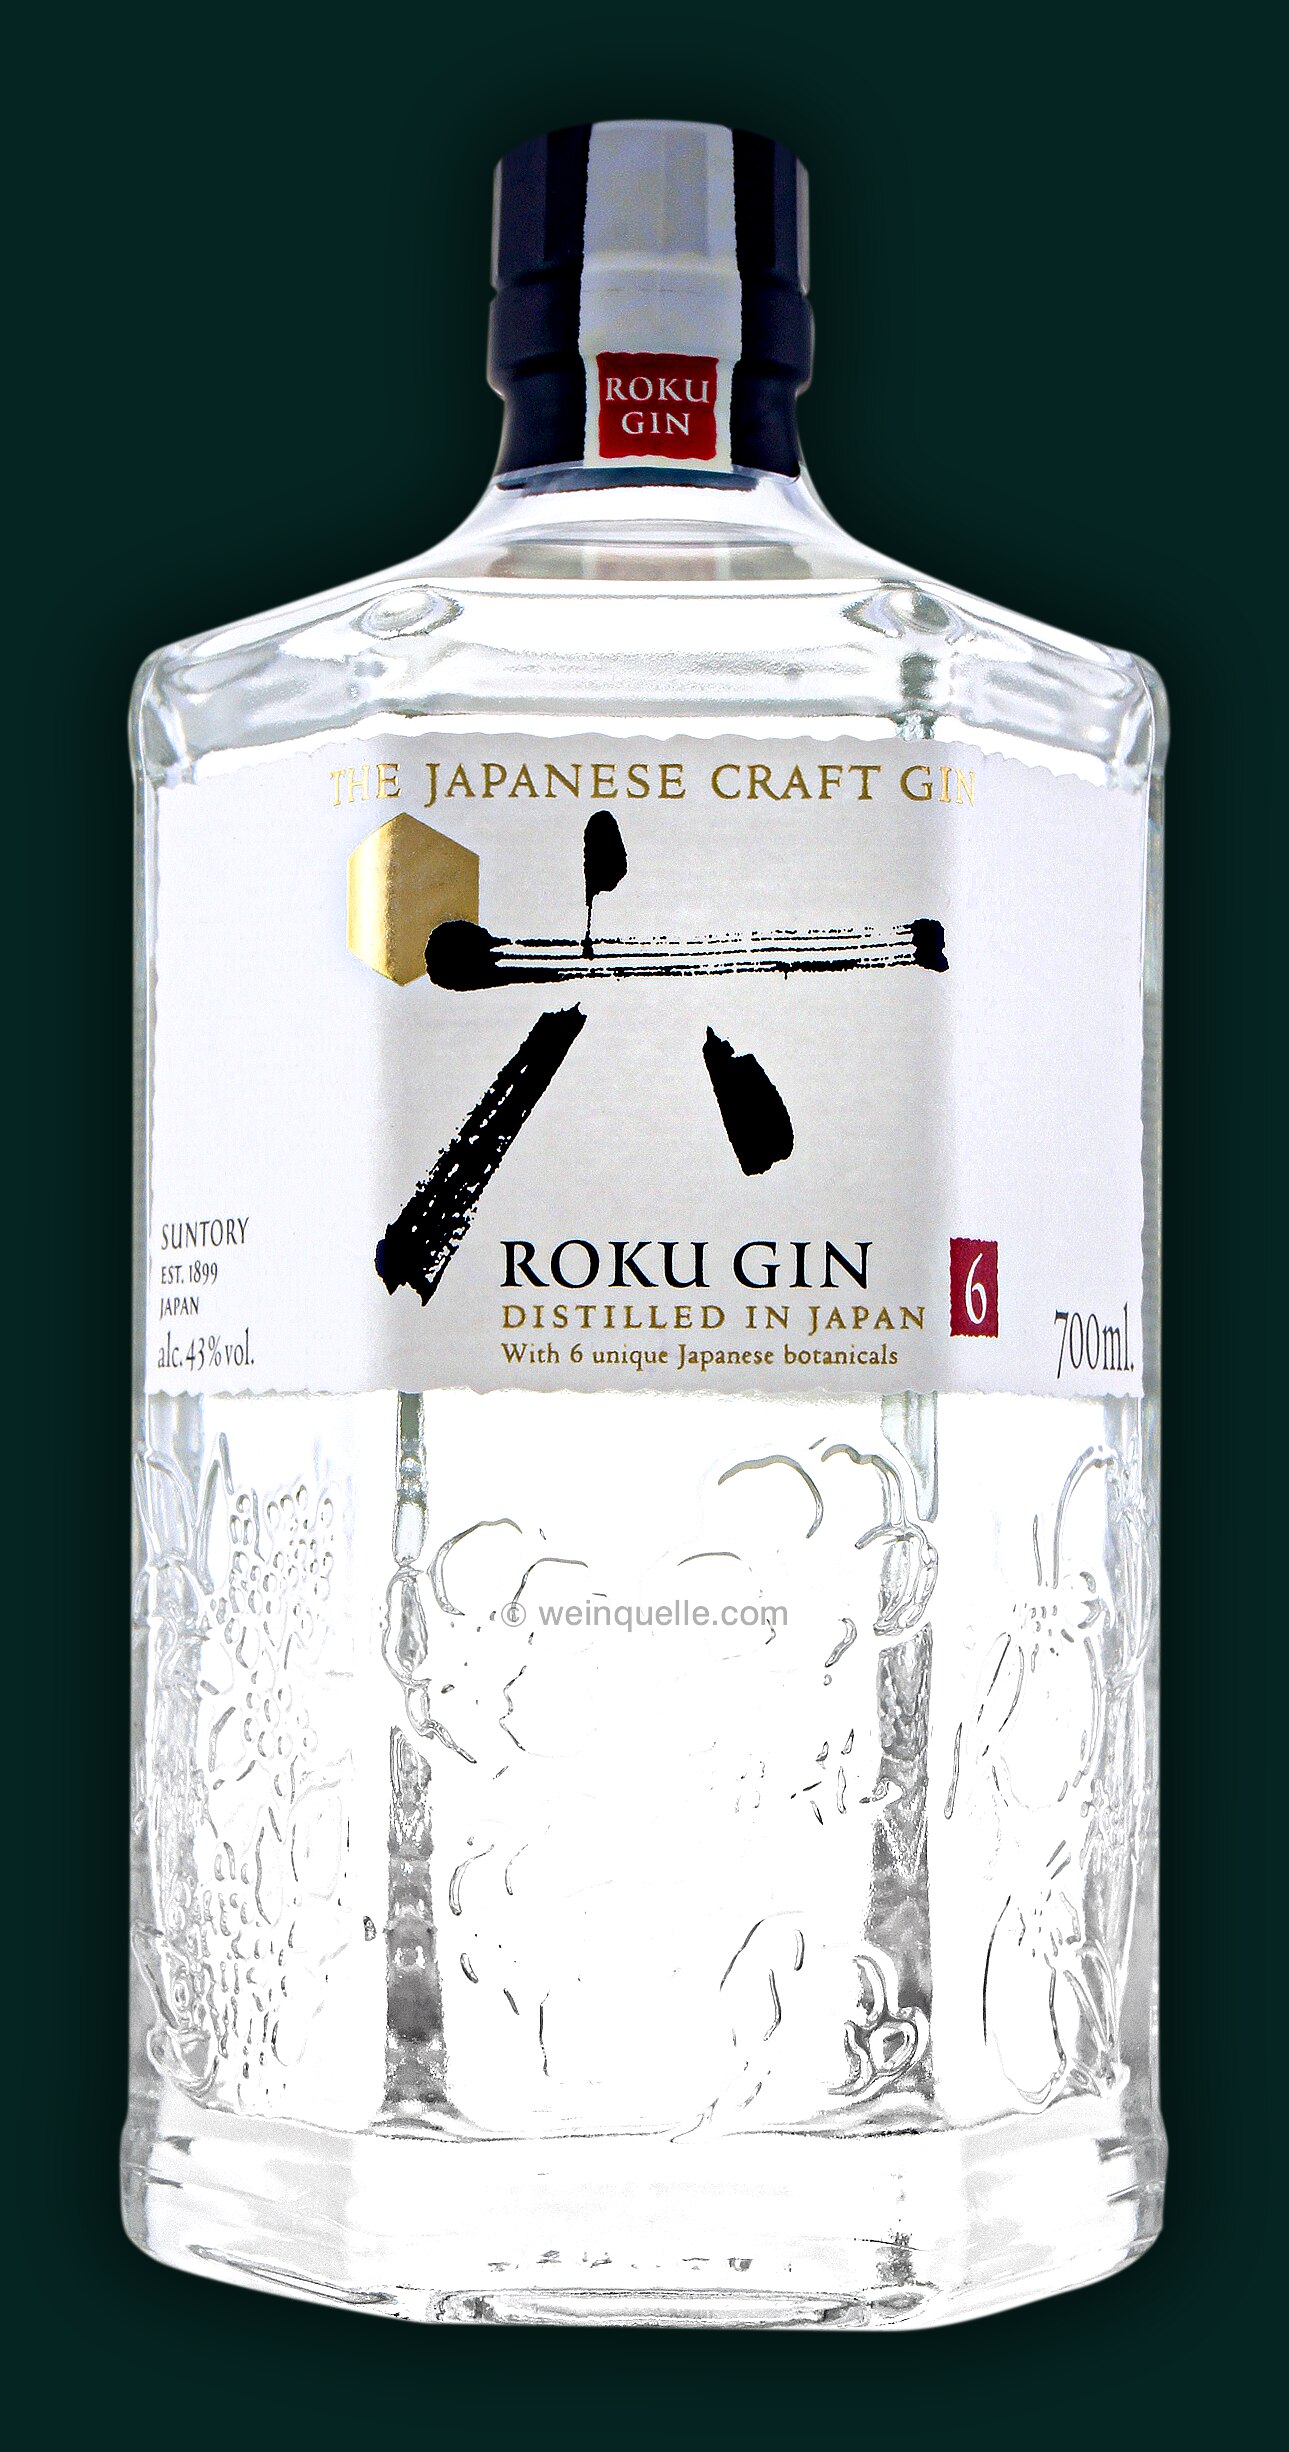 Roku Japanese Craft Gin 43%, - 27,90 € Lühmann Weinquelle